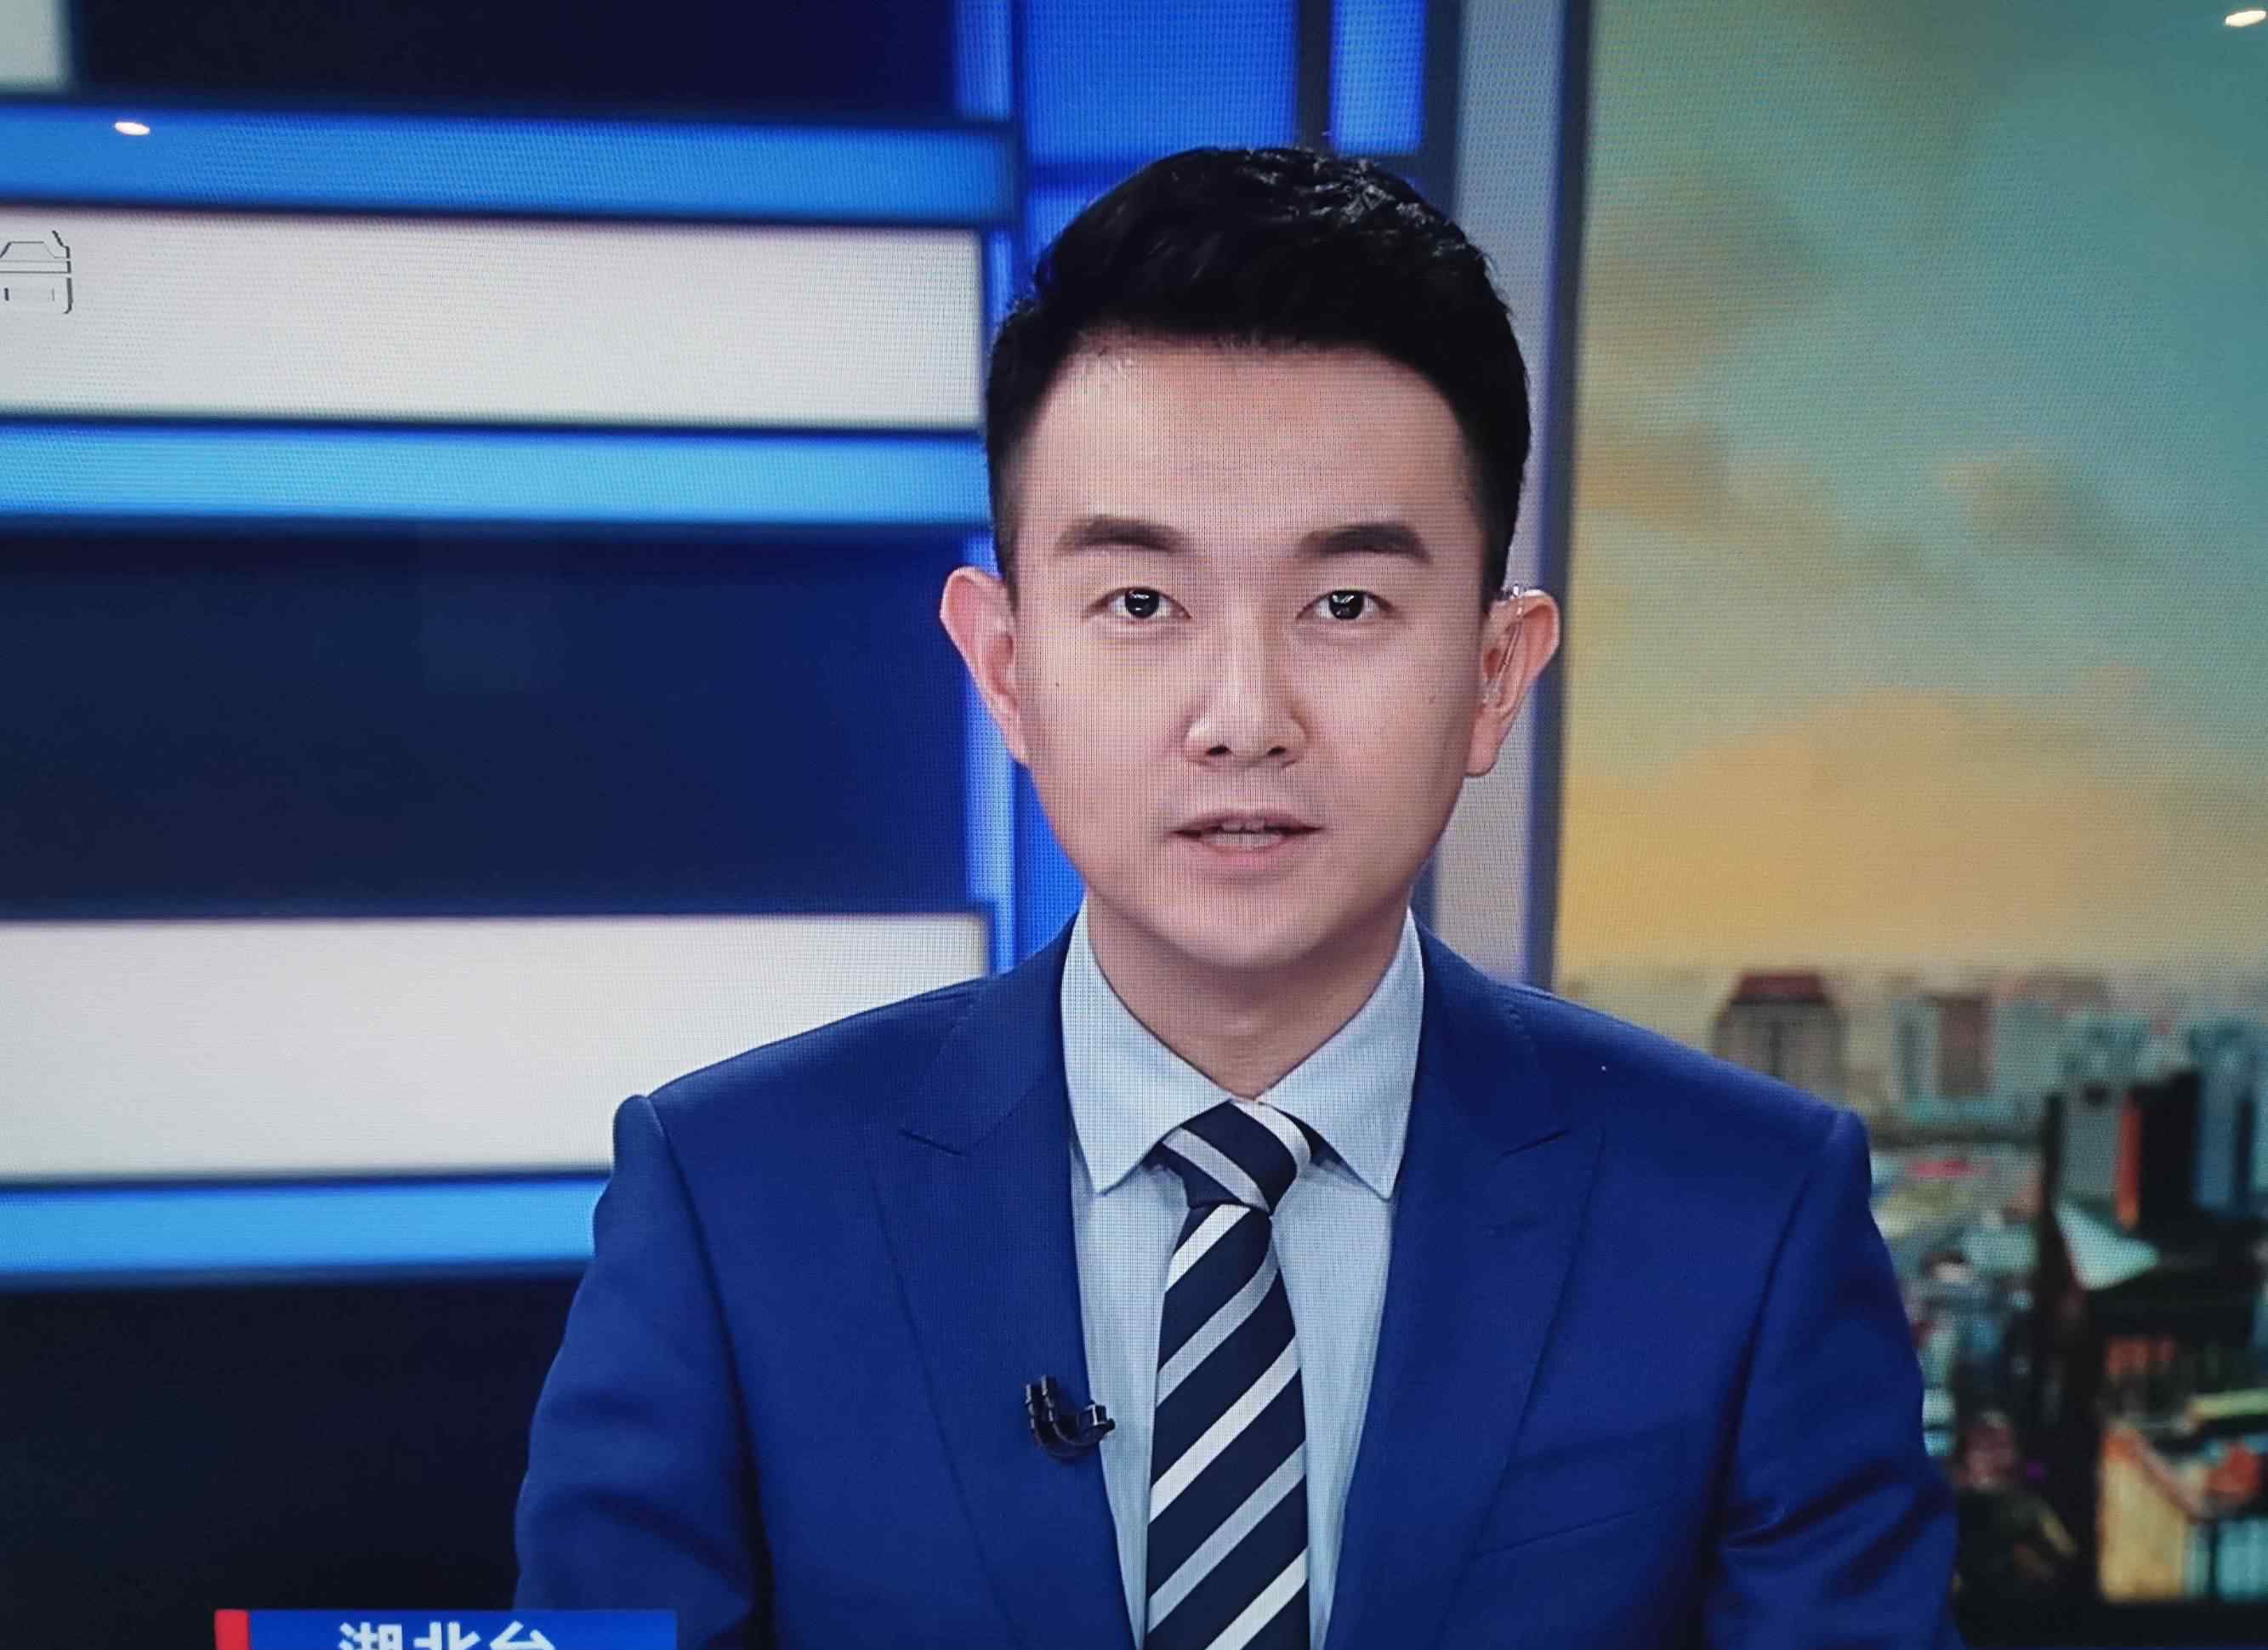 上海电视台男主持人 上海电视台新闻综合频道的男主播